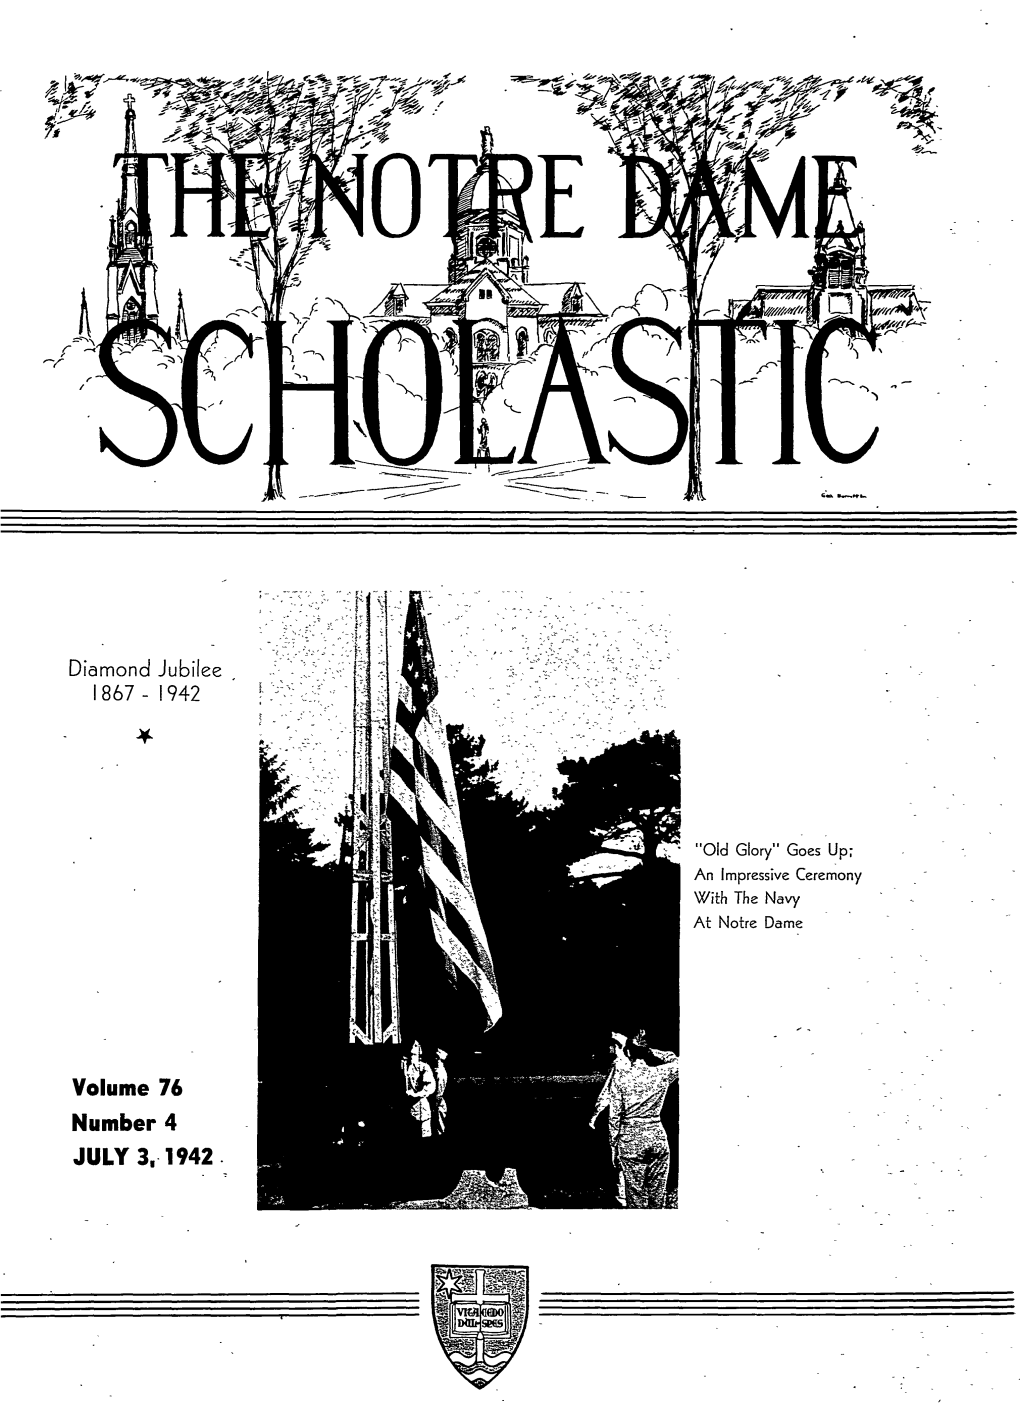 Notre Dame Scholastic, Vol. 76, No. 04 -- 3 July 1942